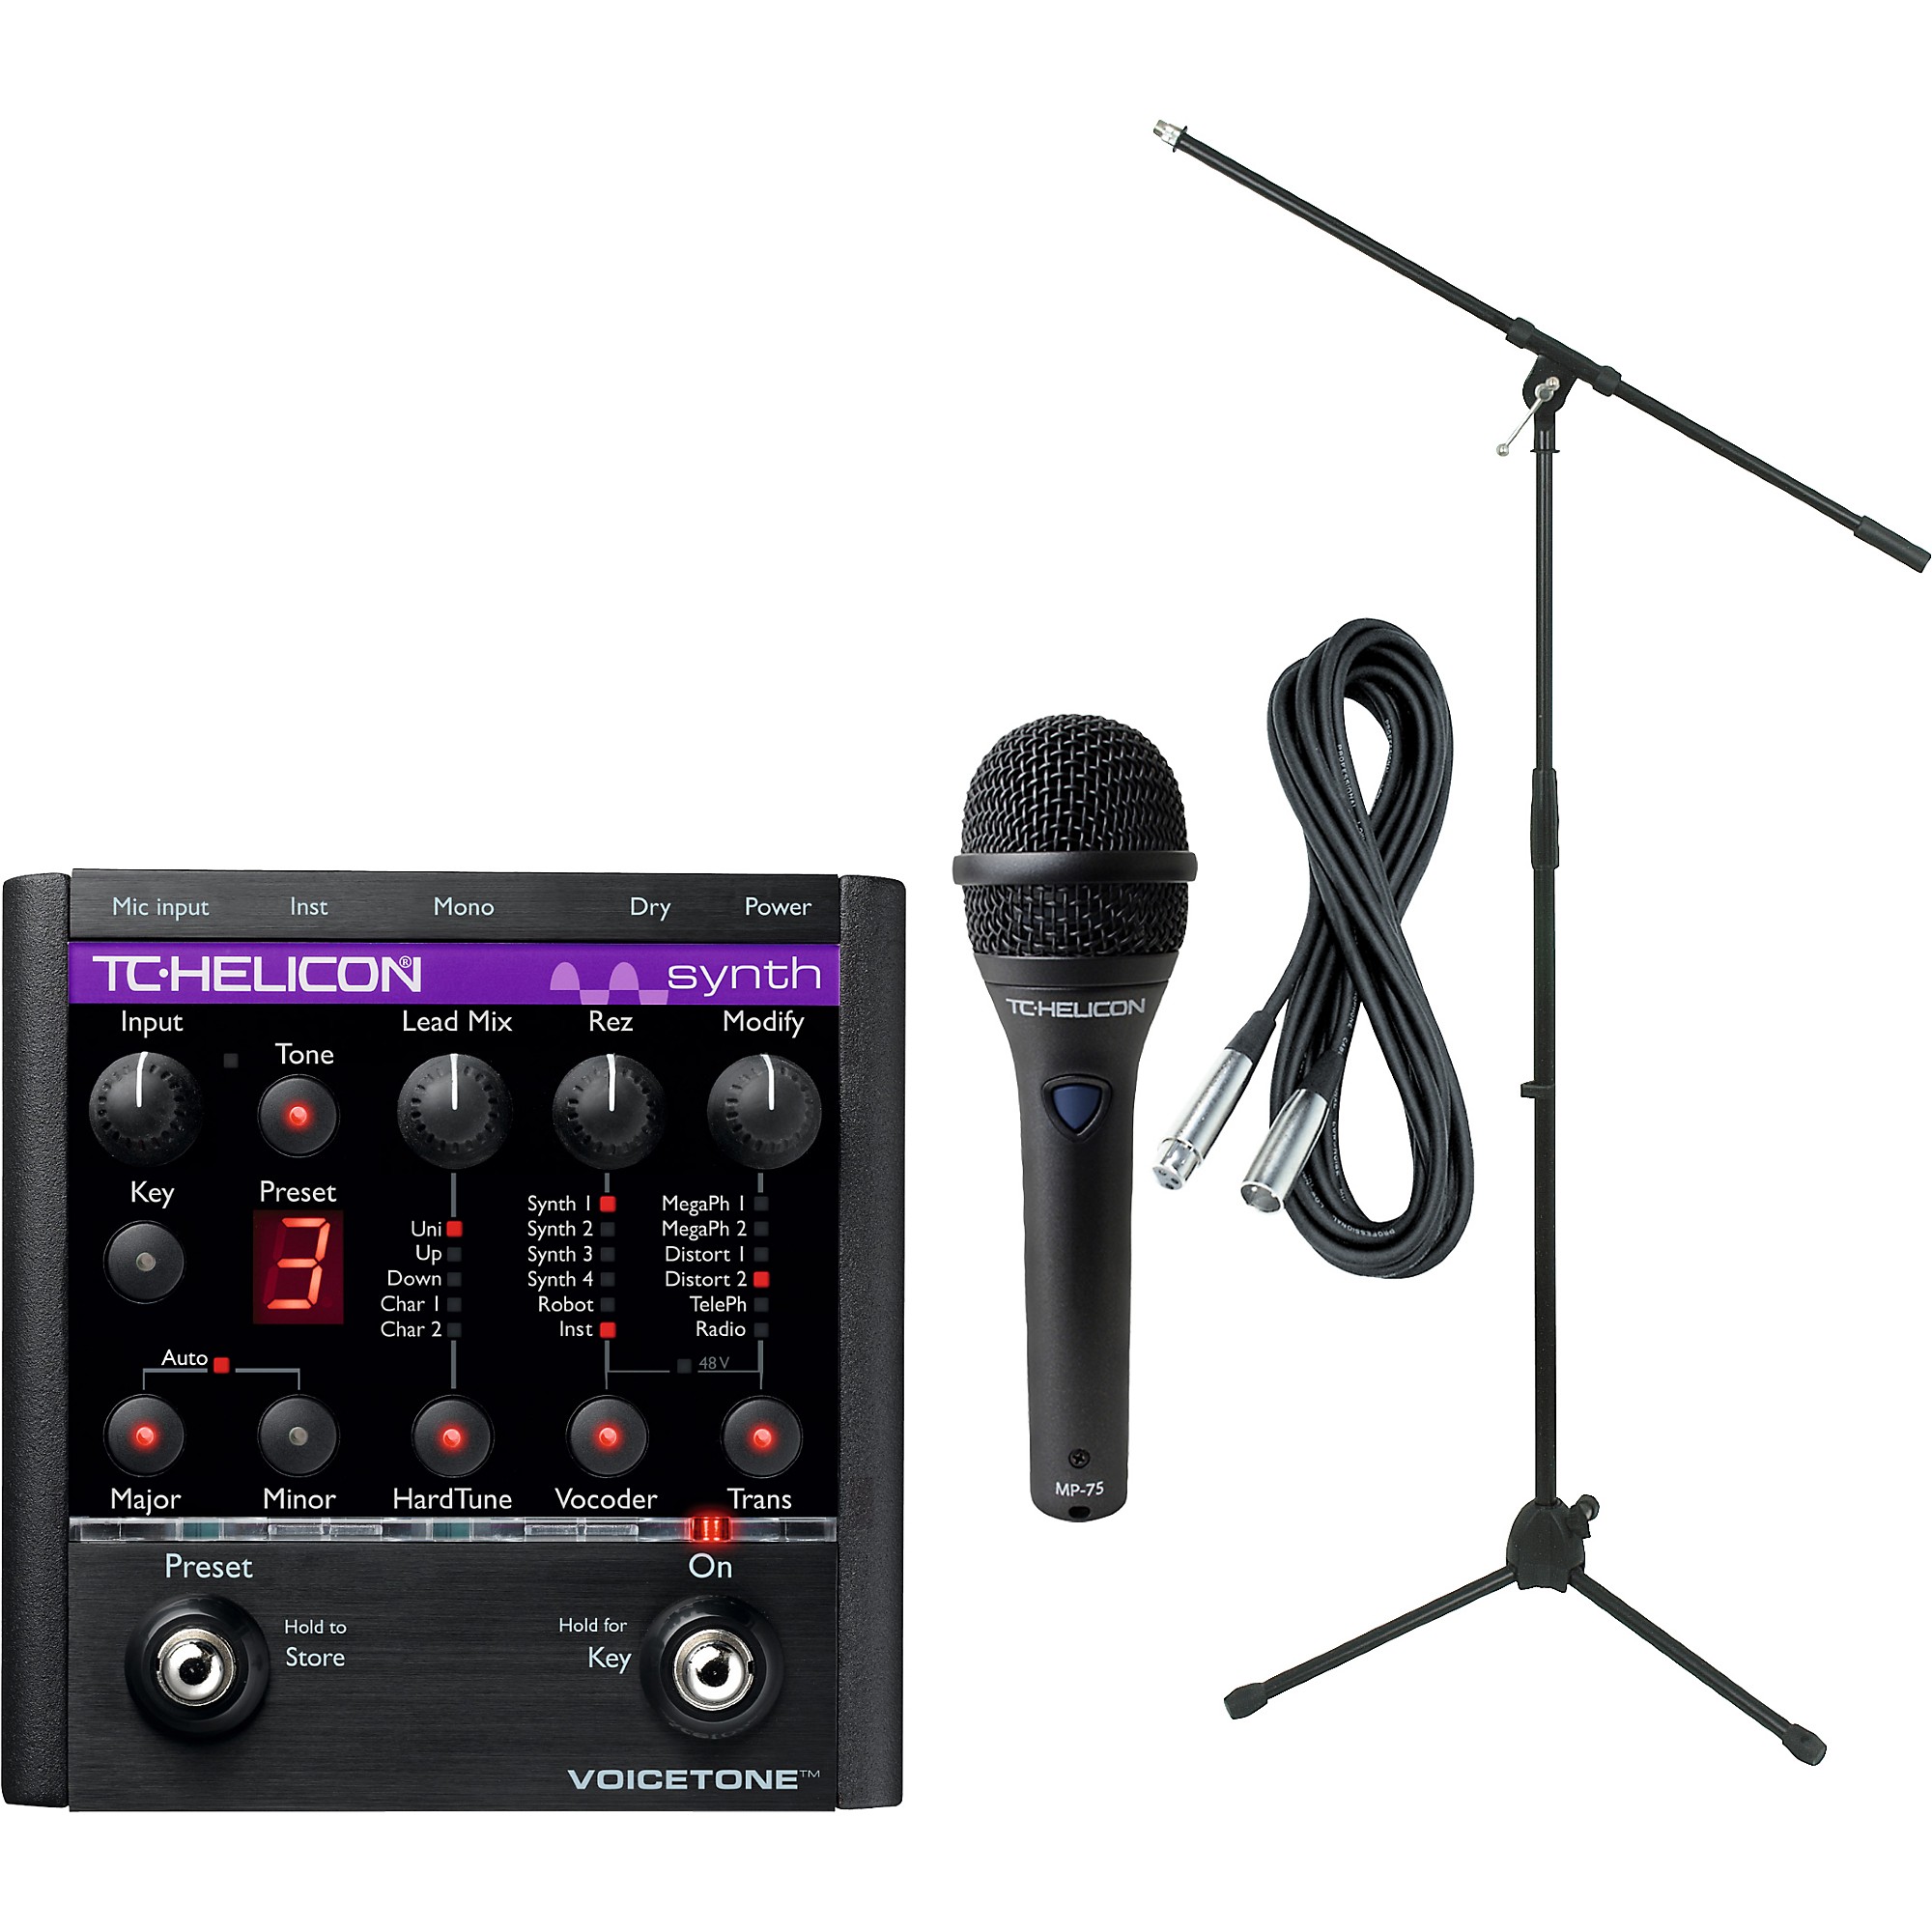 Вокальные эффекты. Микрофон TC Helicon MP-85. TC Helicon VOICELIVE Touch 2. Case for TC Helicon Vocal perform v. TC Helicon perform крепление на стойку диаметр.